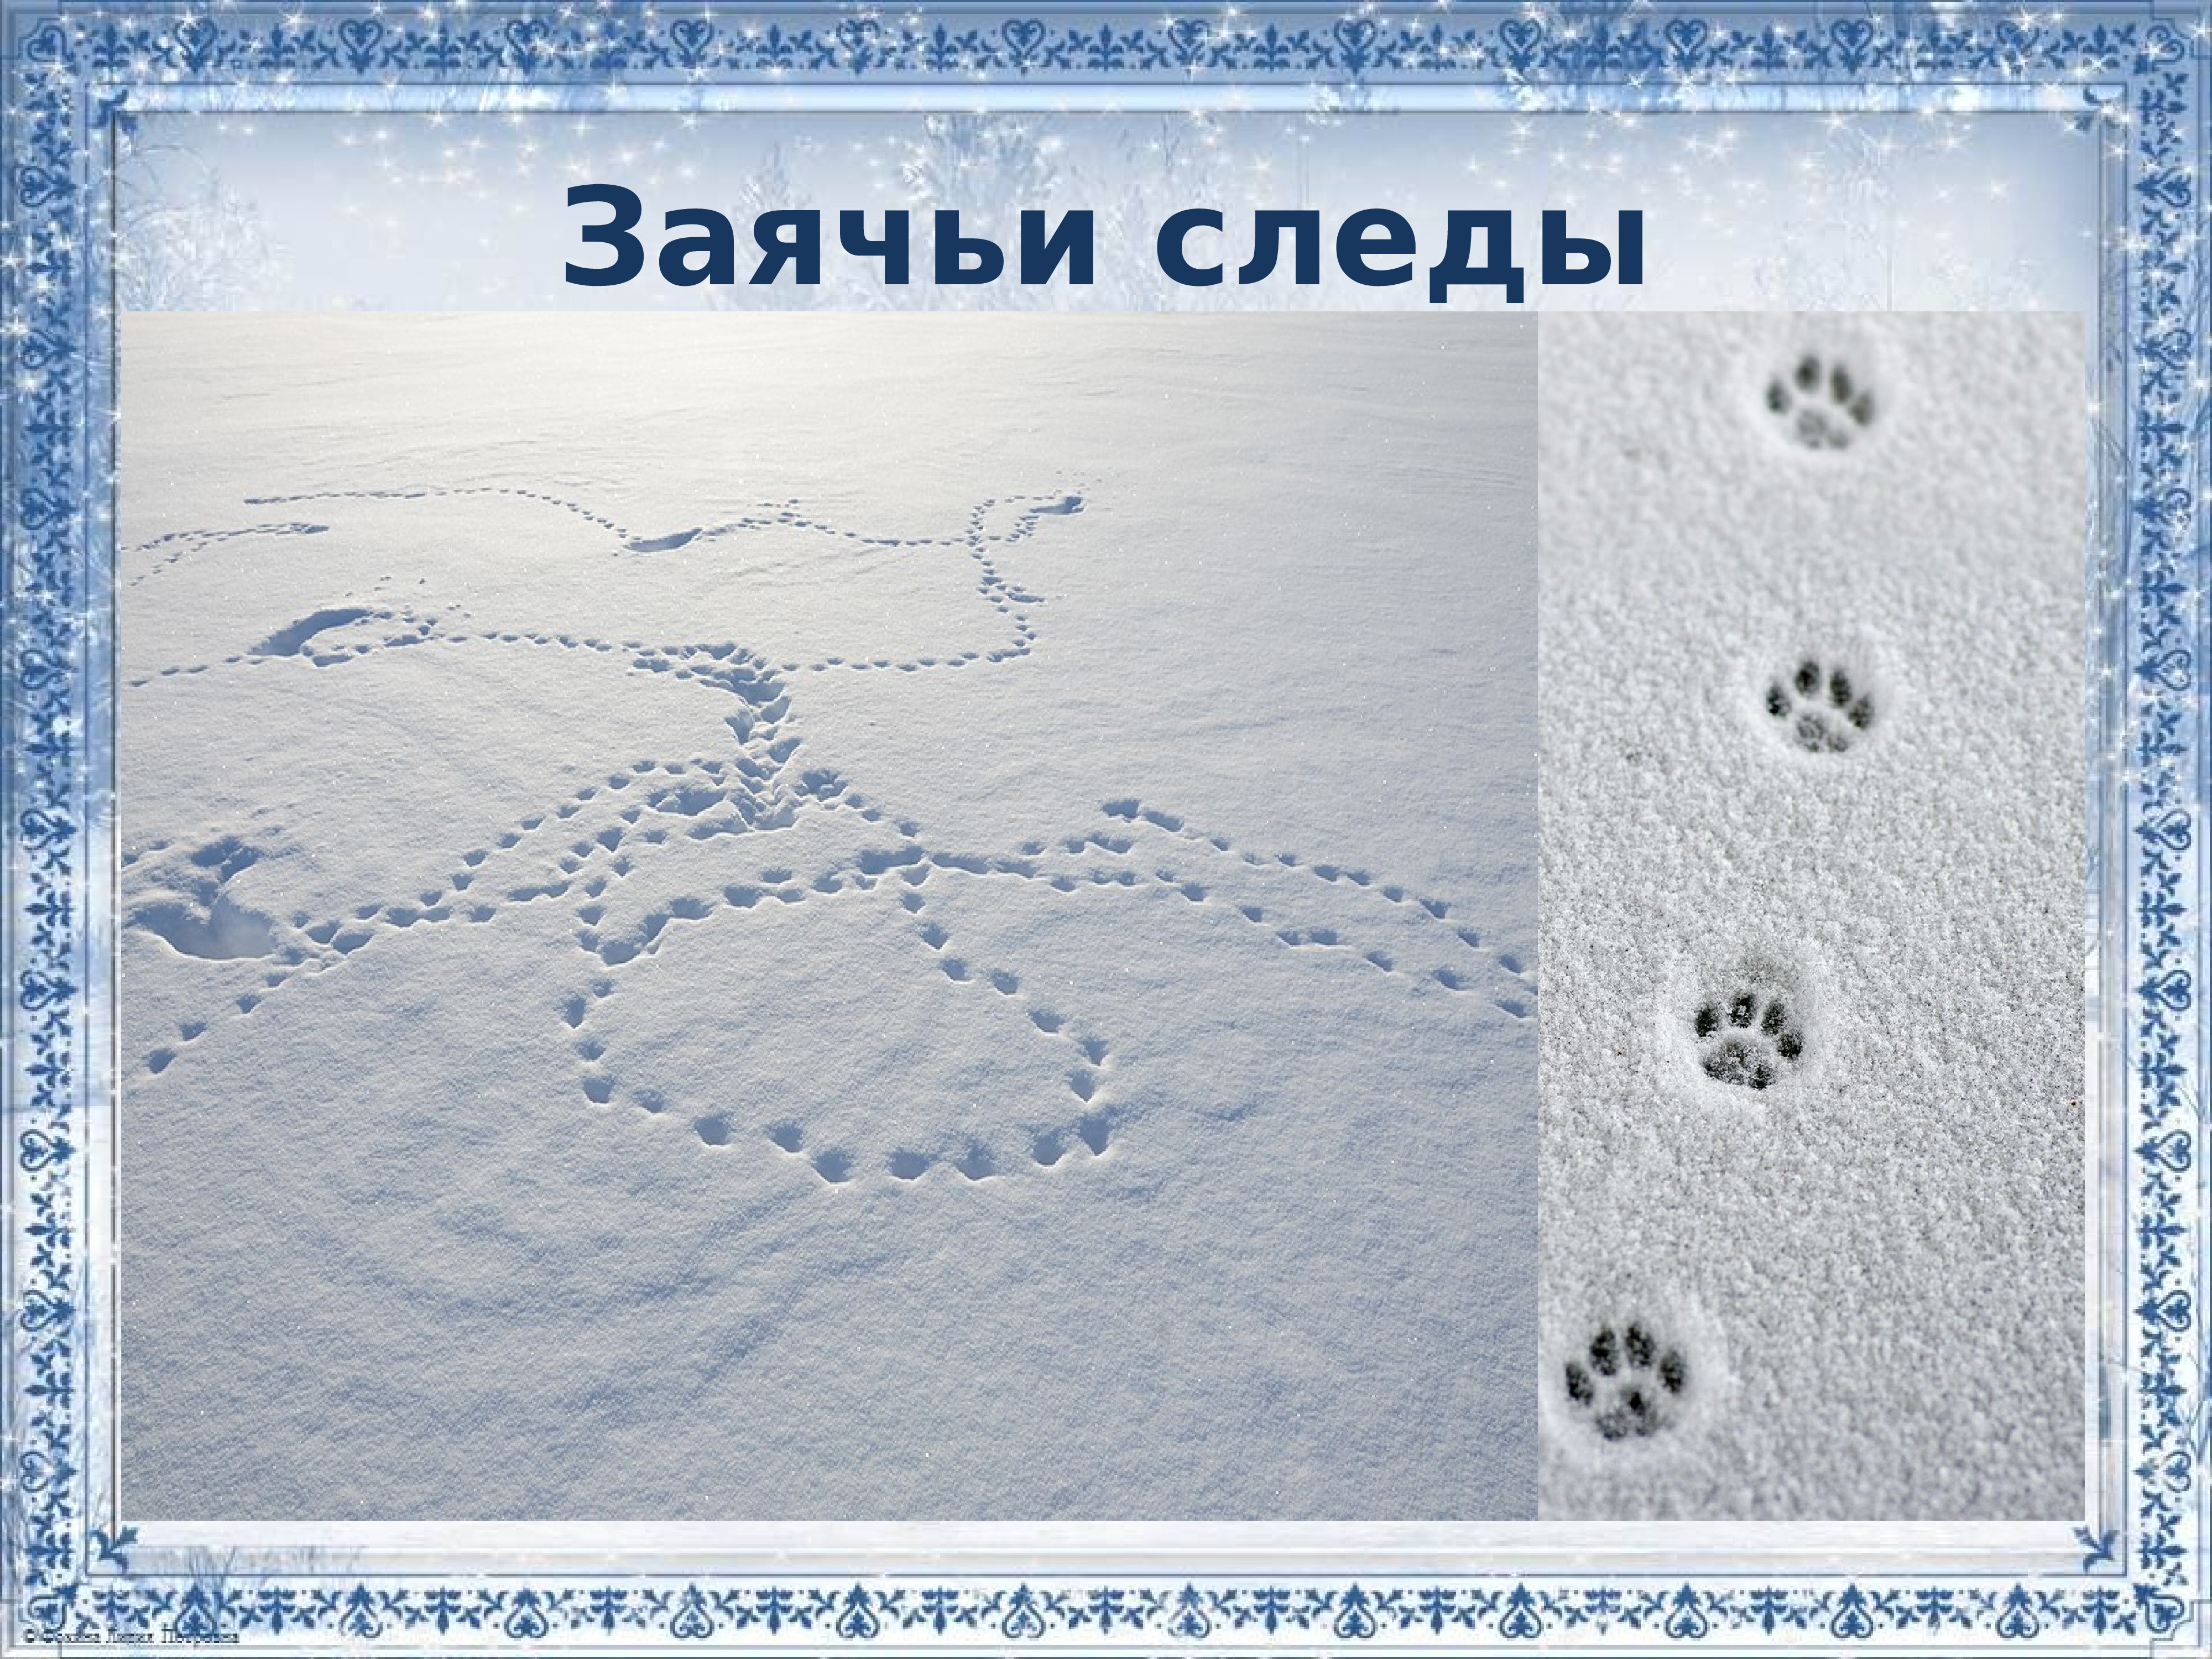 Вид заячьих следов. Картина следы зайца. Следы зайца на снегу. Заячьи следы на снегу для детей. Следы зайца зимой на снегу.